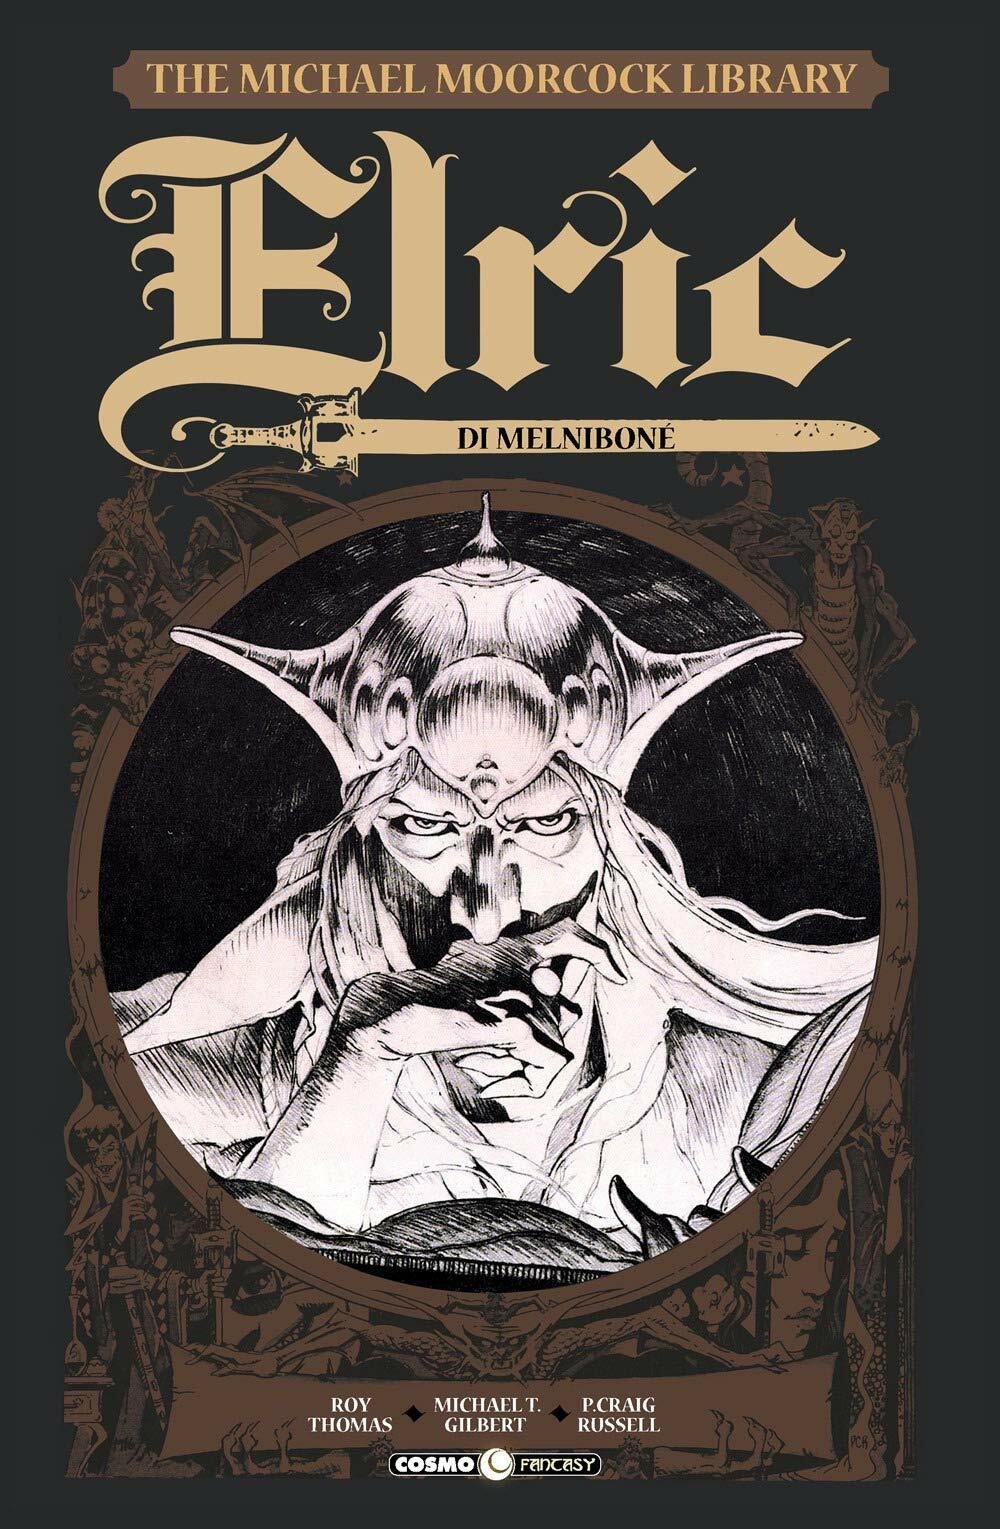 La copertina della prima avventura della saga di Elric, intitolata Elric di Melniboné